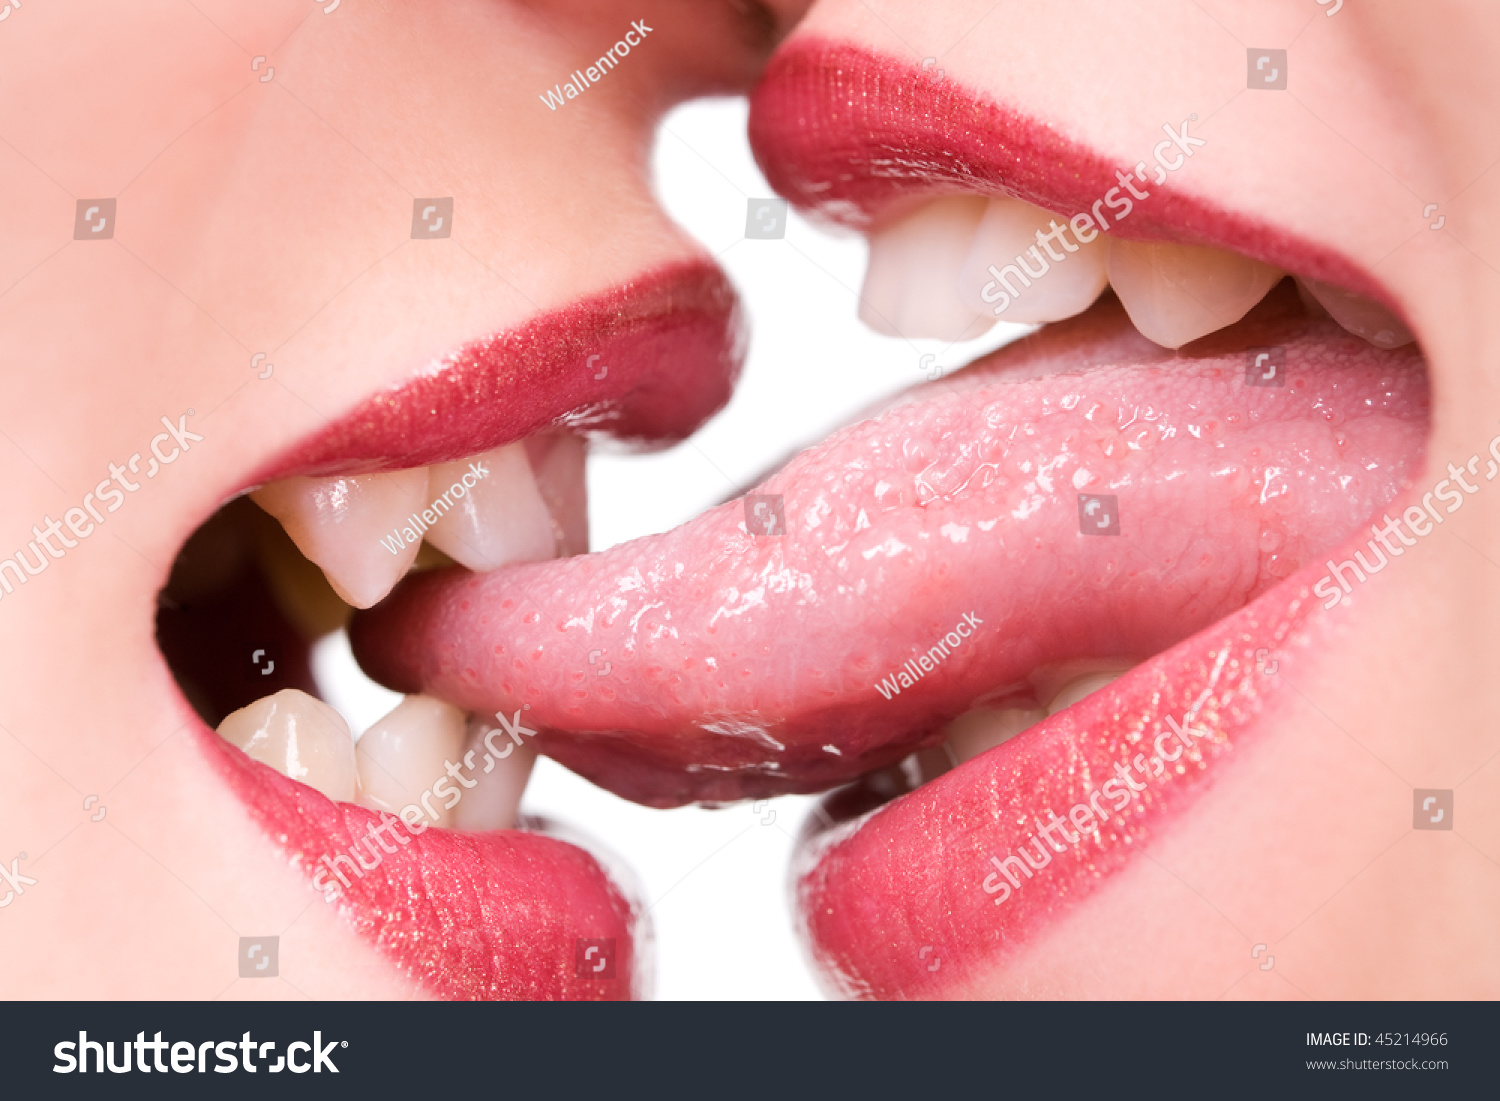 Two girls lick. Губы с языком фото. Поцелуй в губы. Женский поцелуй. Поцелуй с языком.